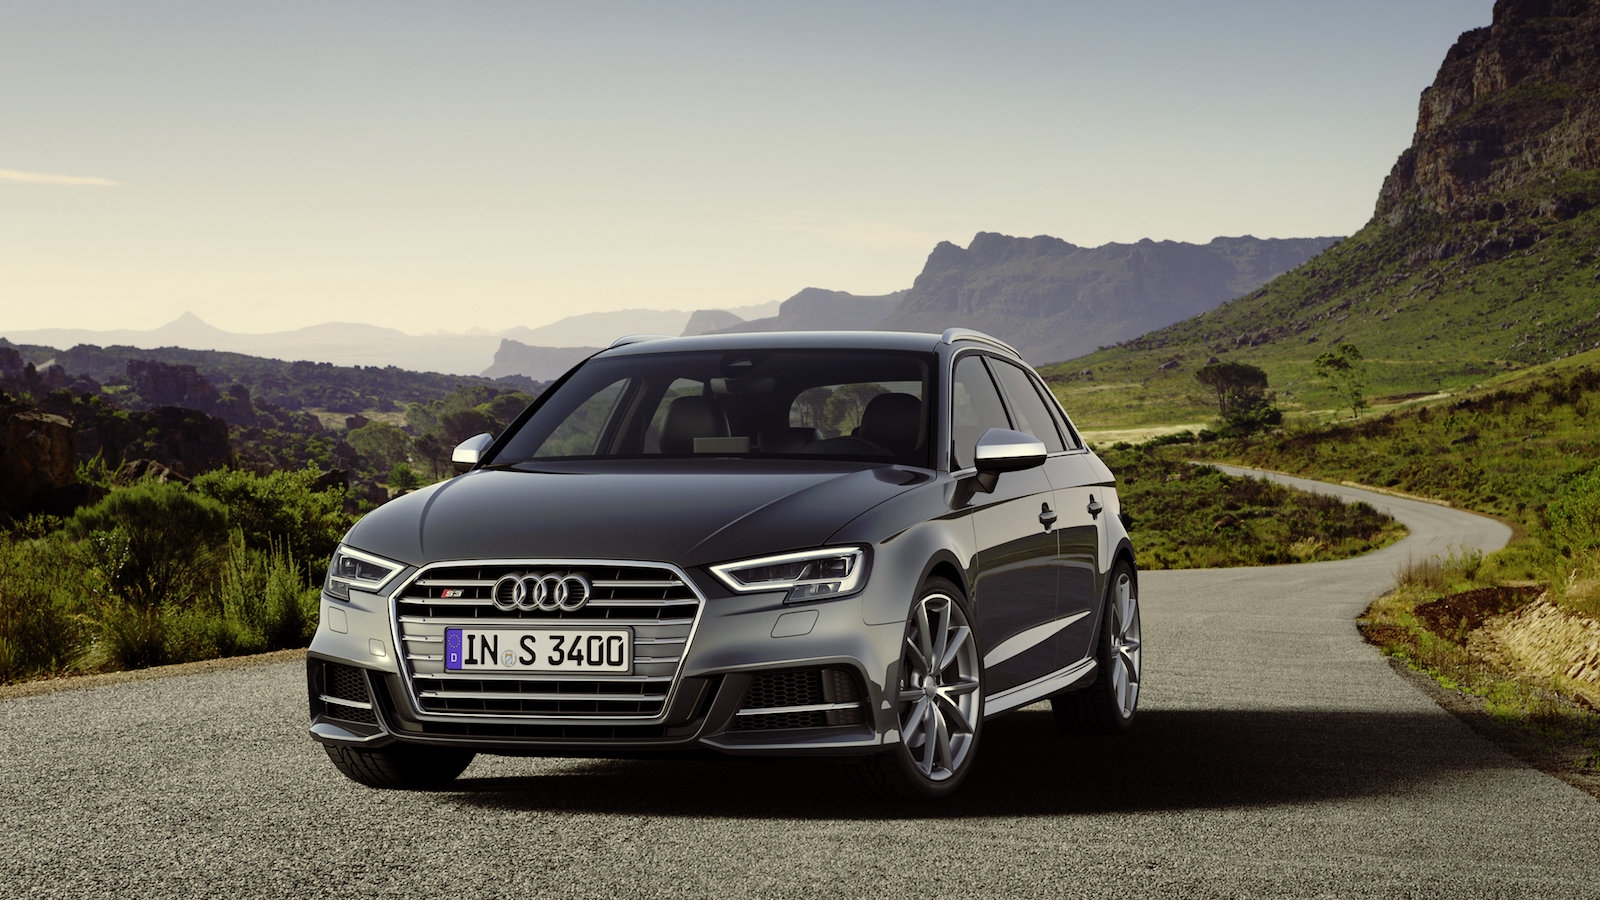 Downsizing in casa Audi: debutta il benzina 1.0 TFSI sulla nuova A3